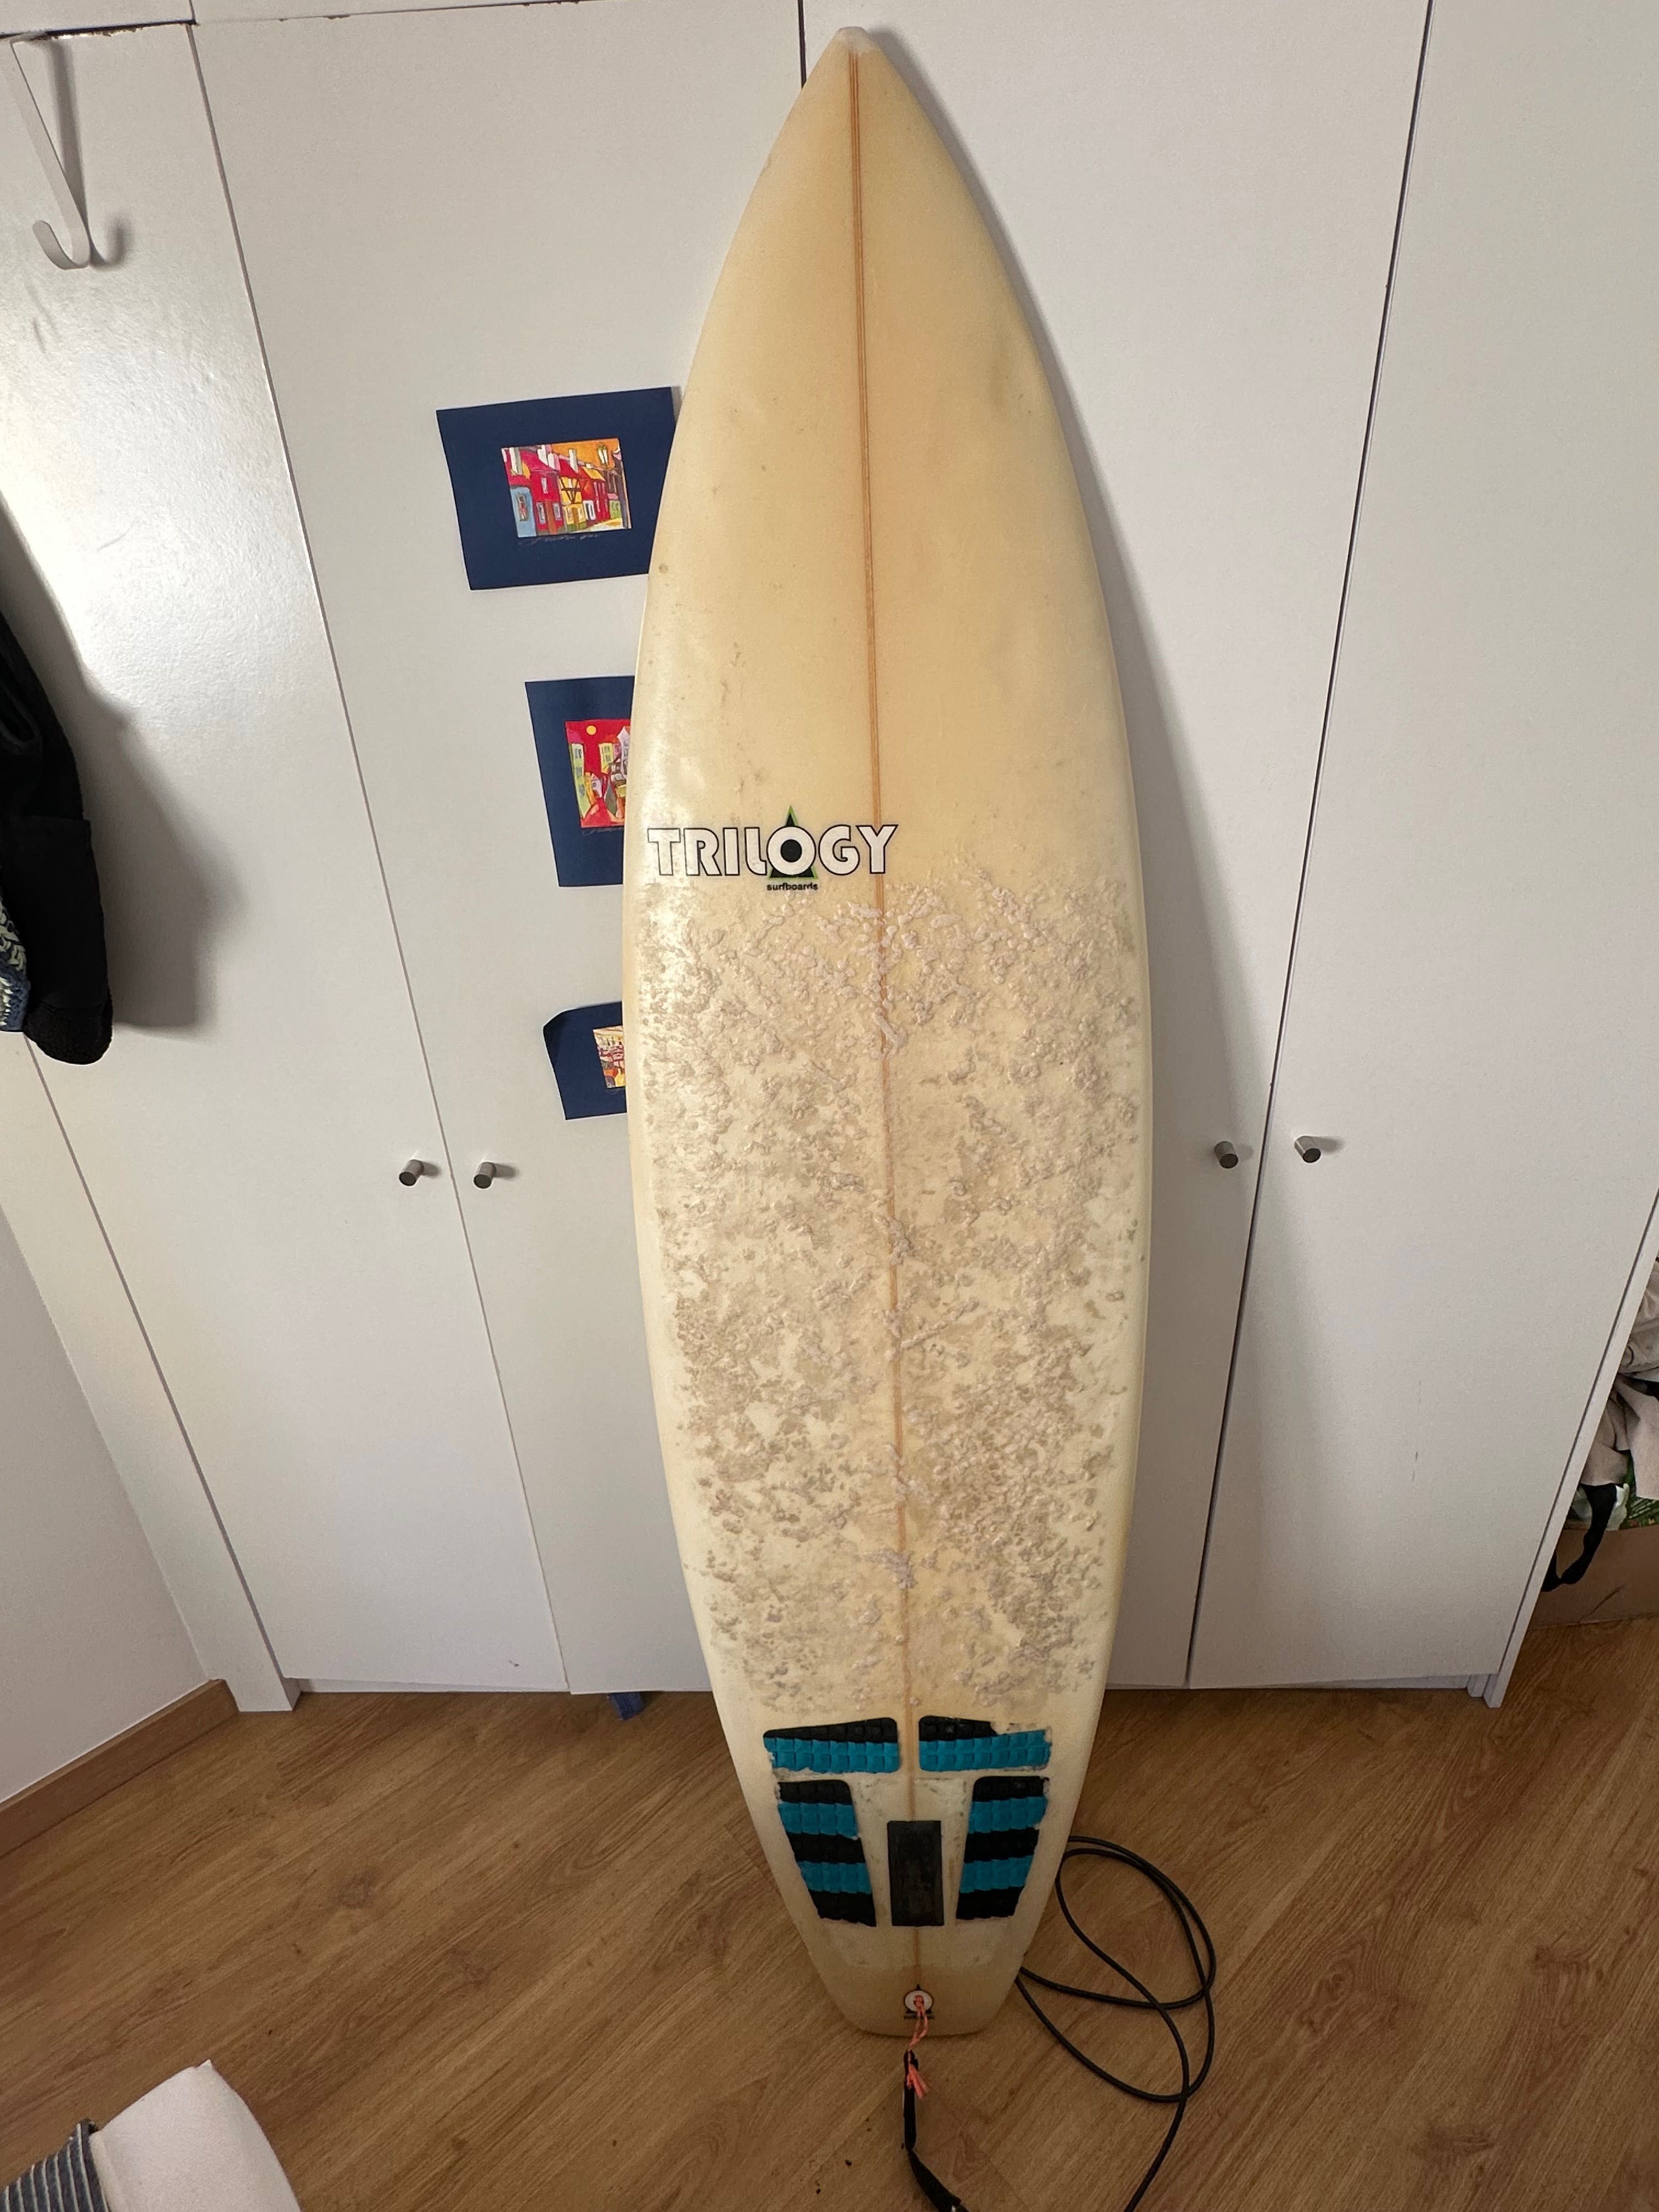 Trilogy surfboard 6’8 around 30liters